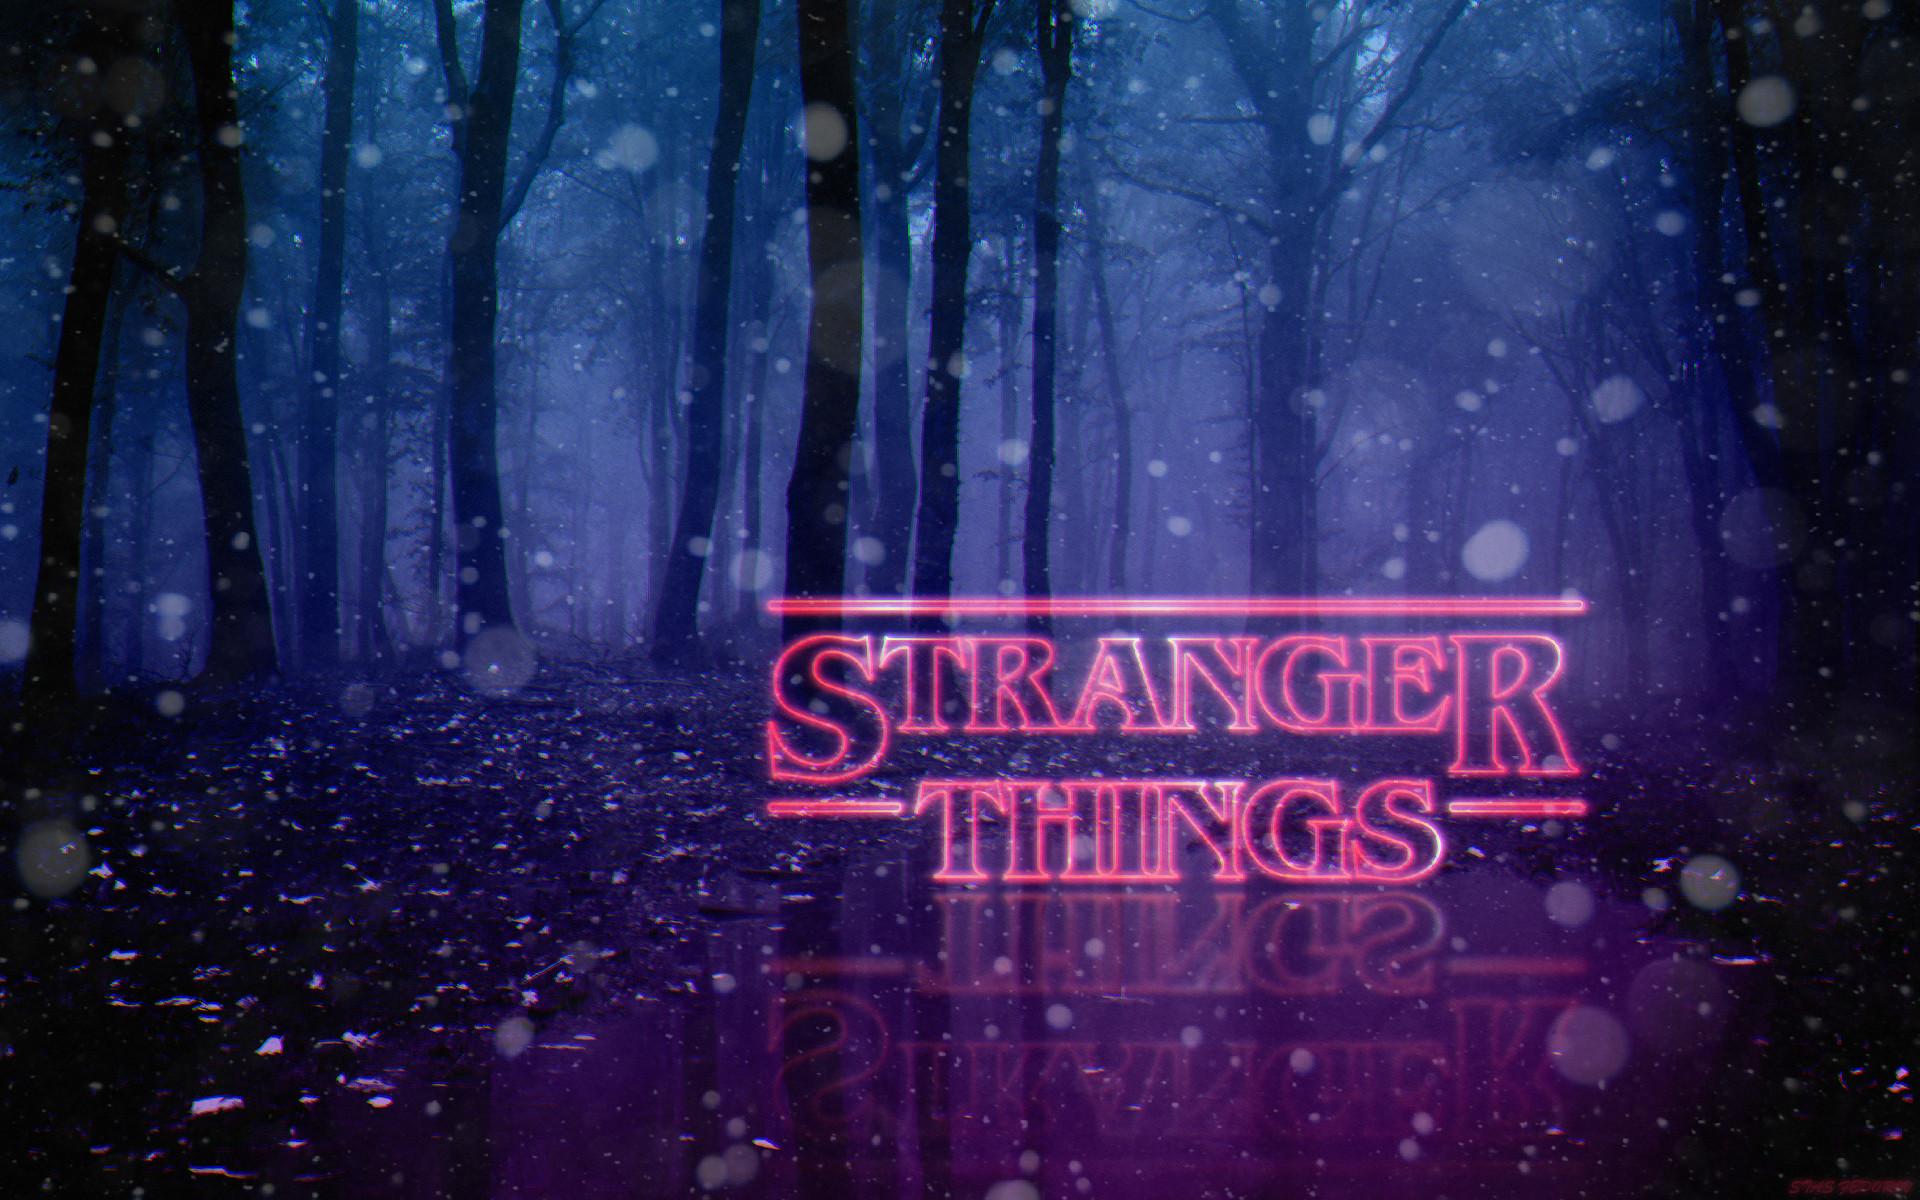 Stranger Things Logo Wallpaper